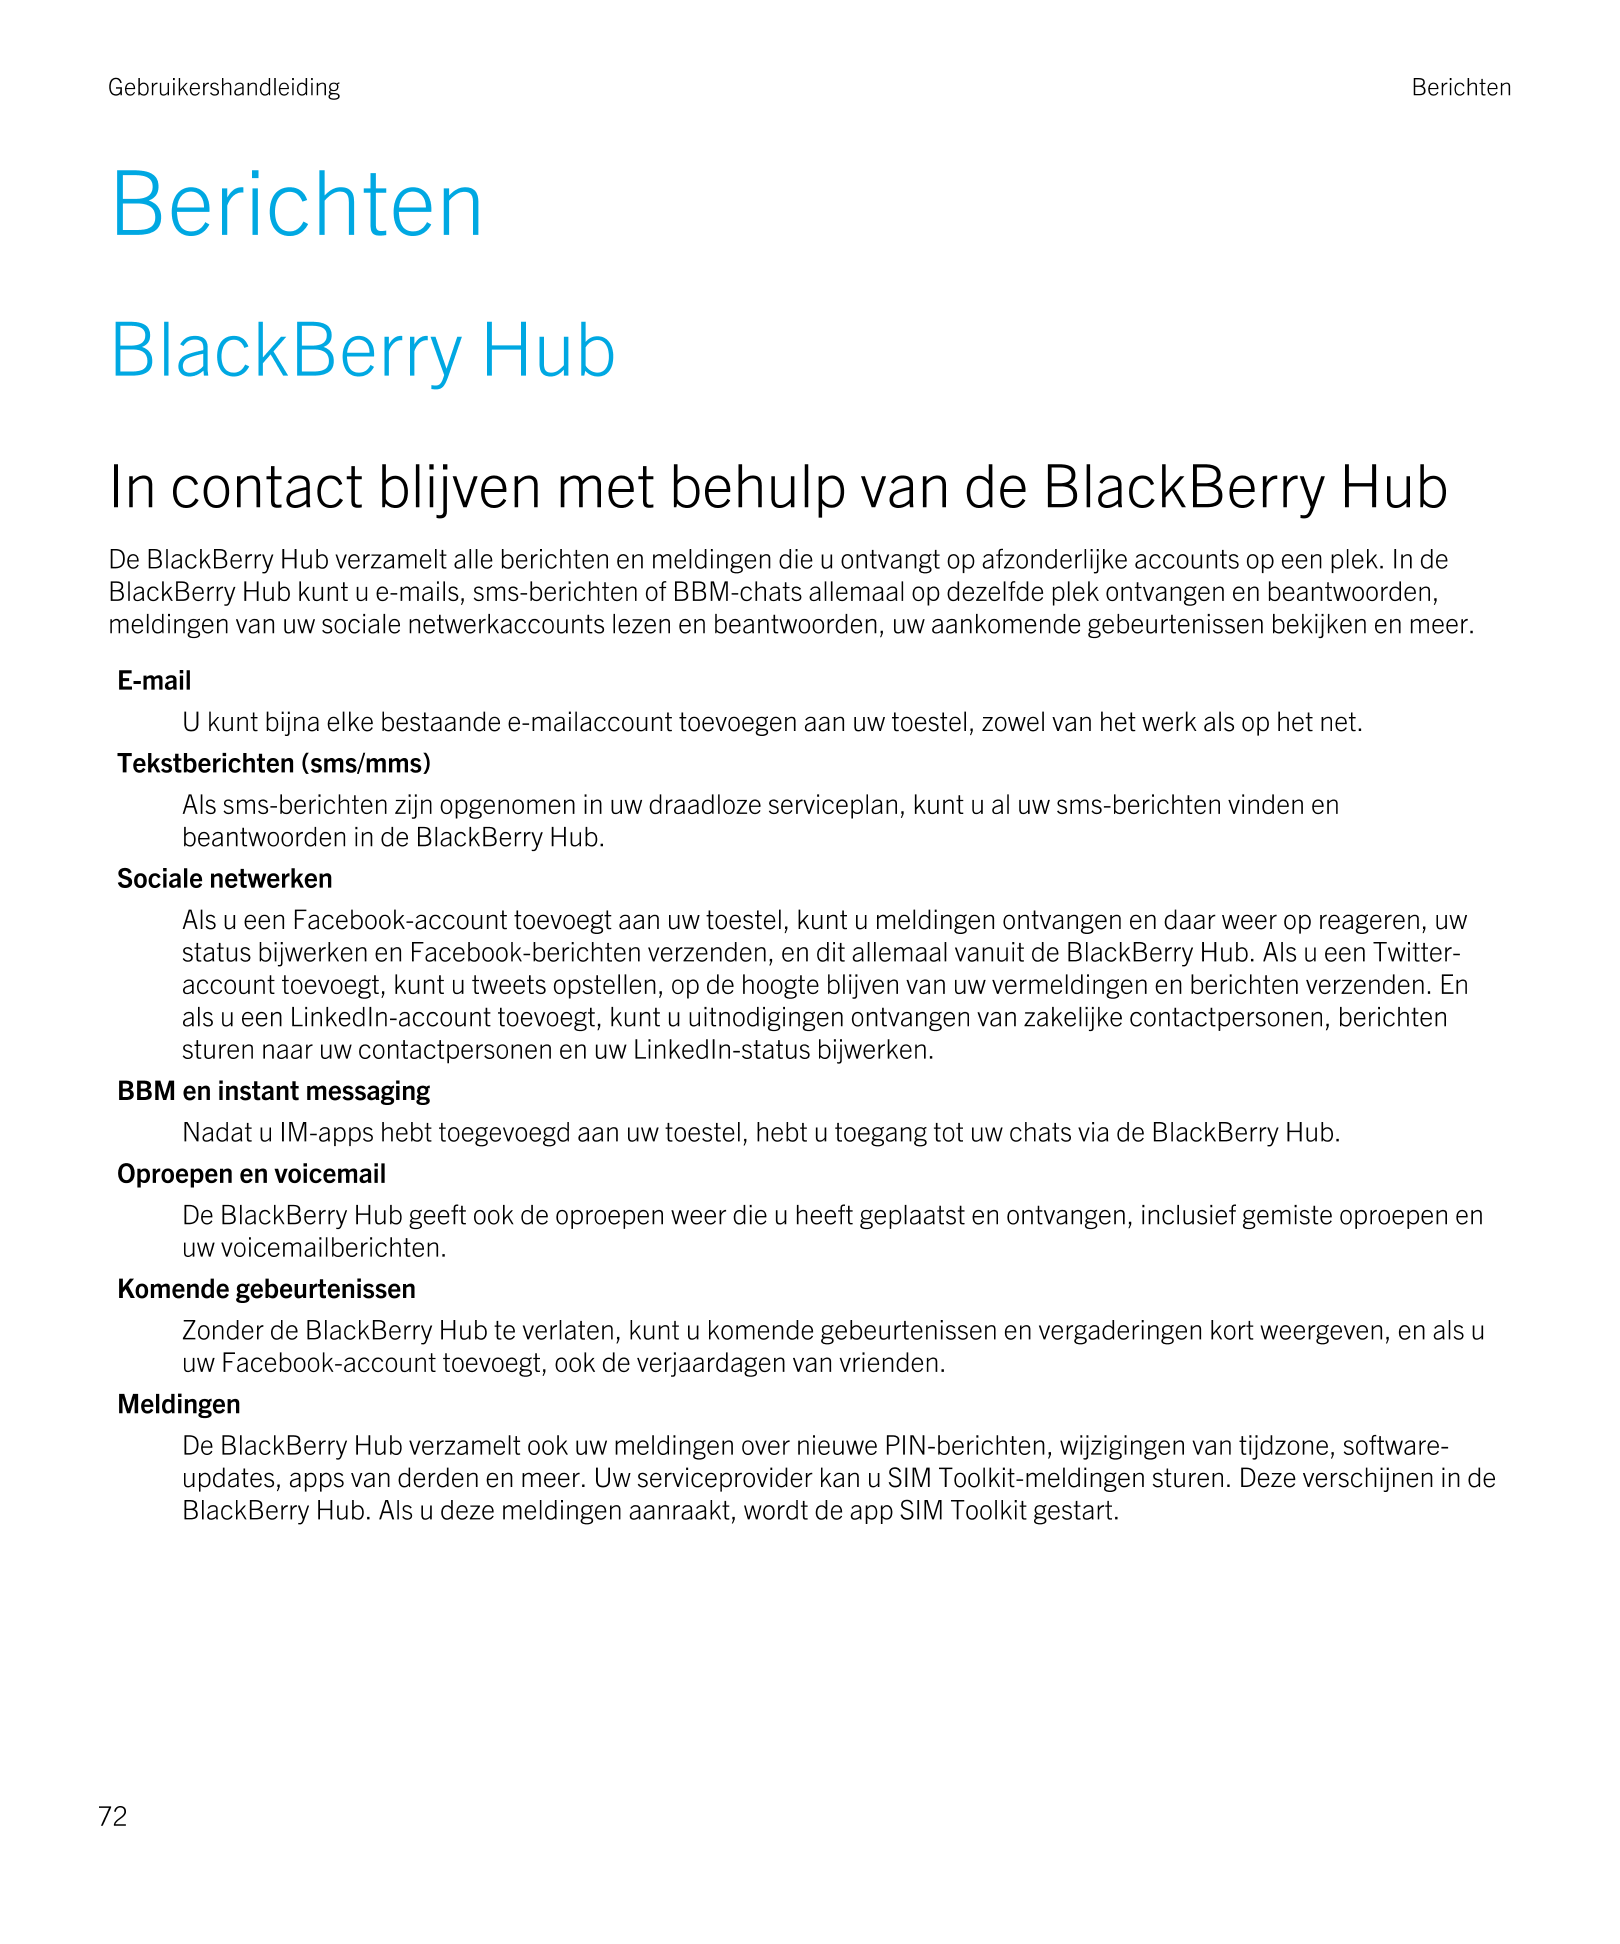 Gebruikershandleiding Berichten
Berichten
BlackBerry Hub
In contact blijven met behulp van de  BlackBerry Hub
De  BlackBerry Hub